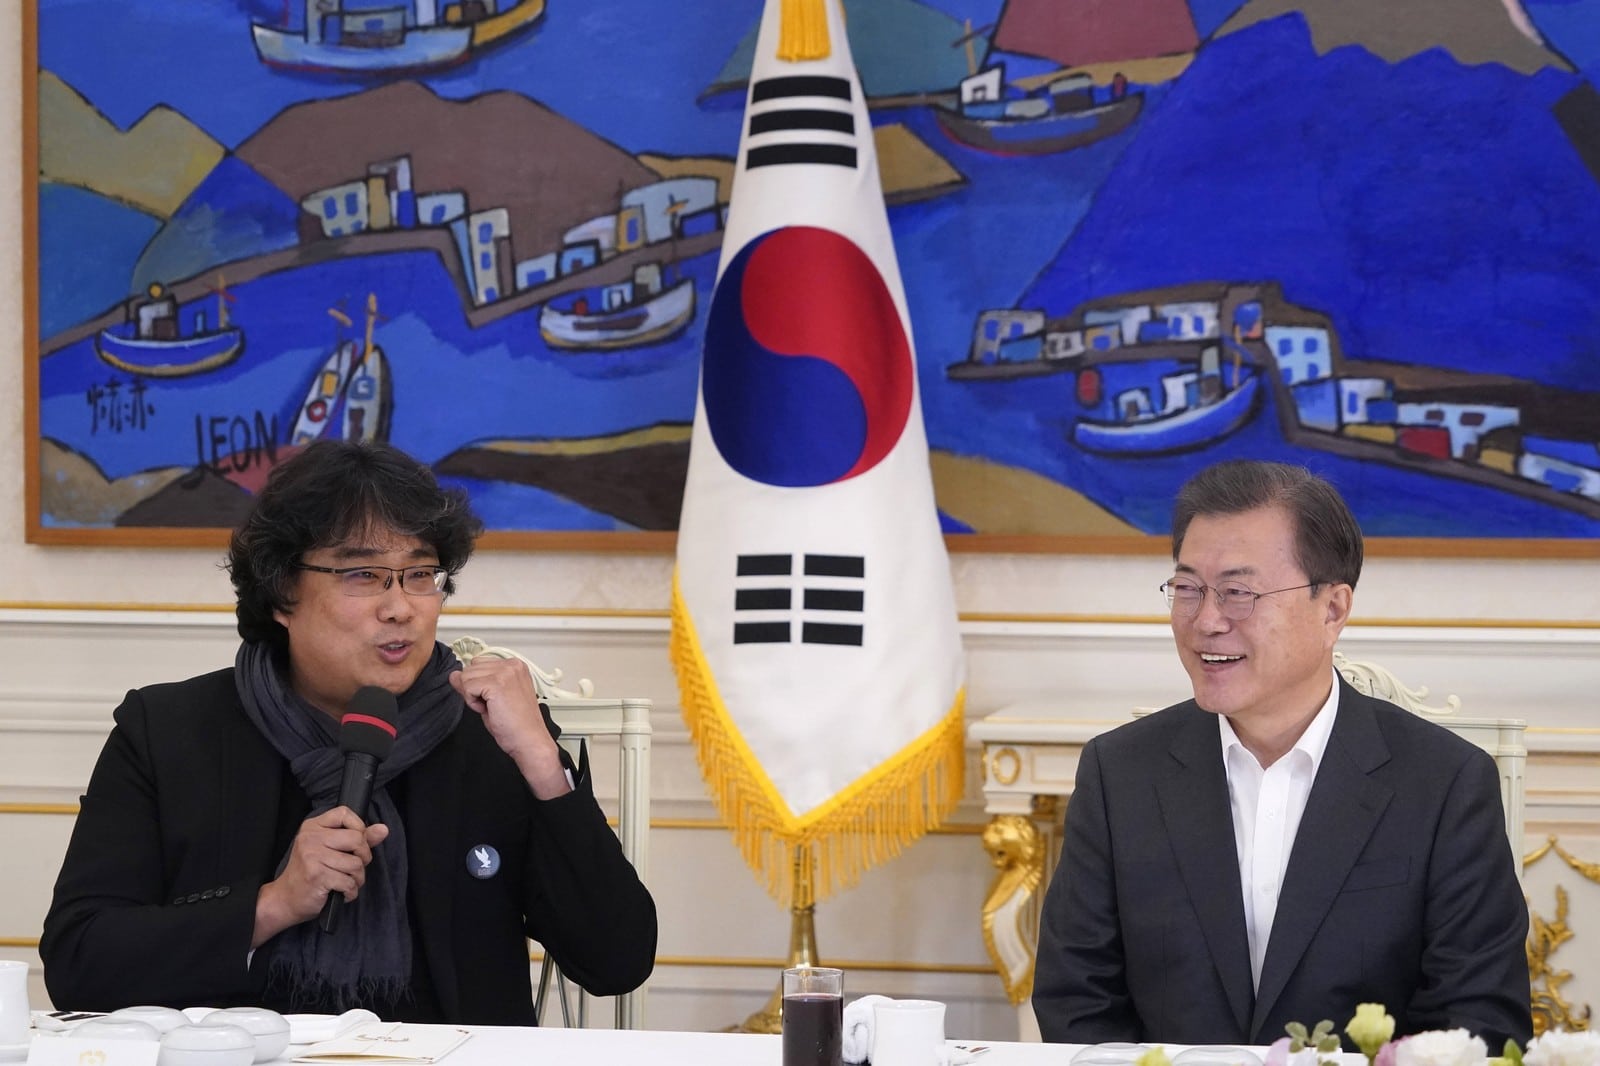 Le réalisateur Bong Joon-ho présente son film "Parasite" au président Moon Jae-in, le 20 février 2020,
Auteurs  : Kim Hong-ji/AP/SIPA,
Numéro de reportage  : AP22430356_000003.